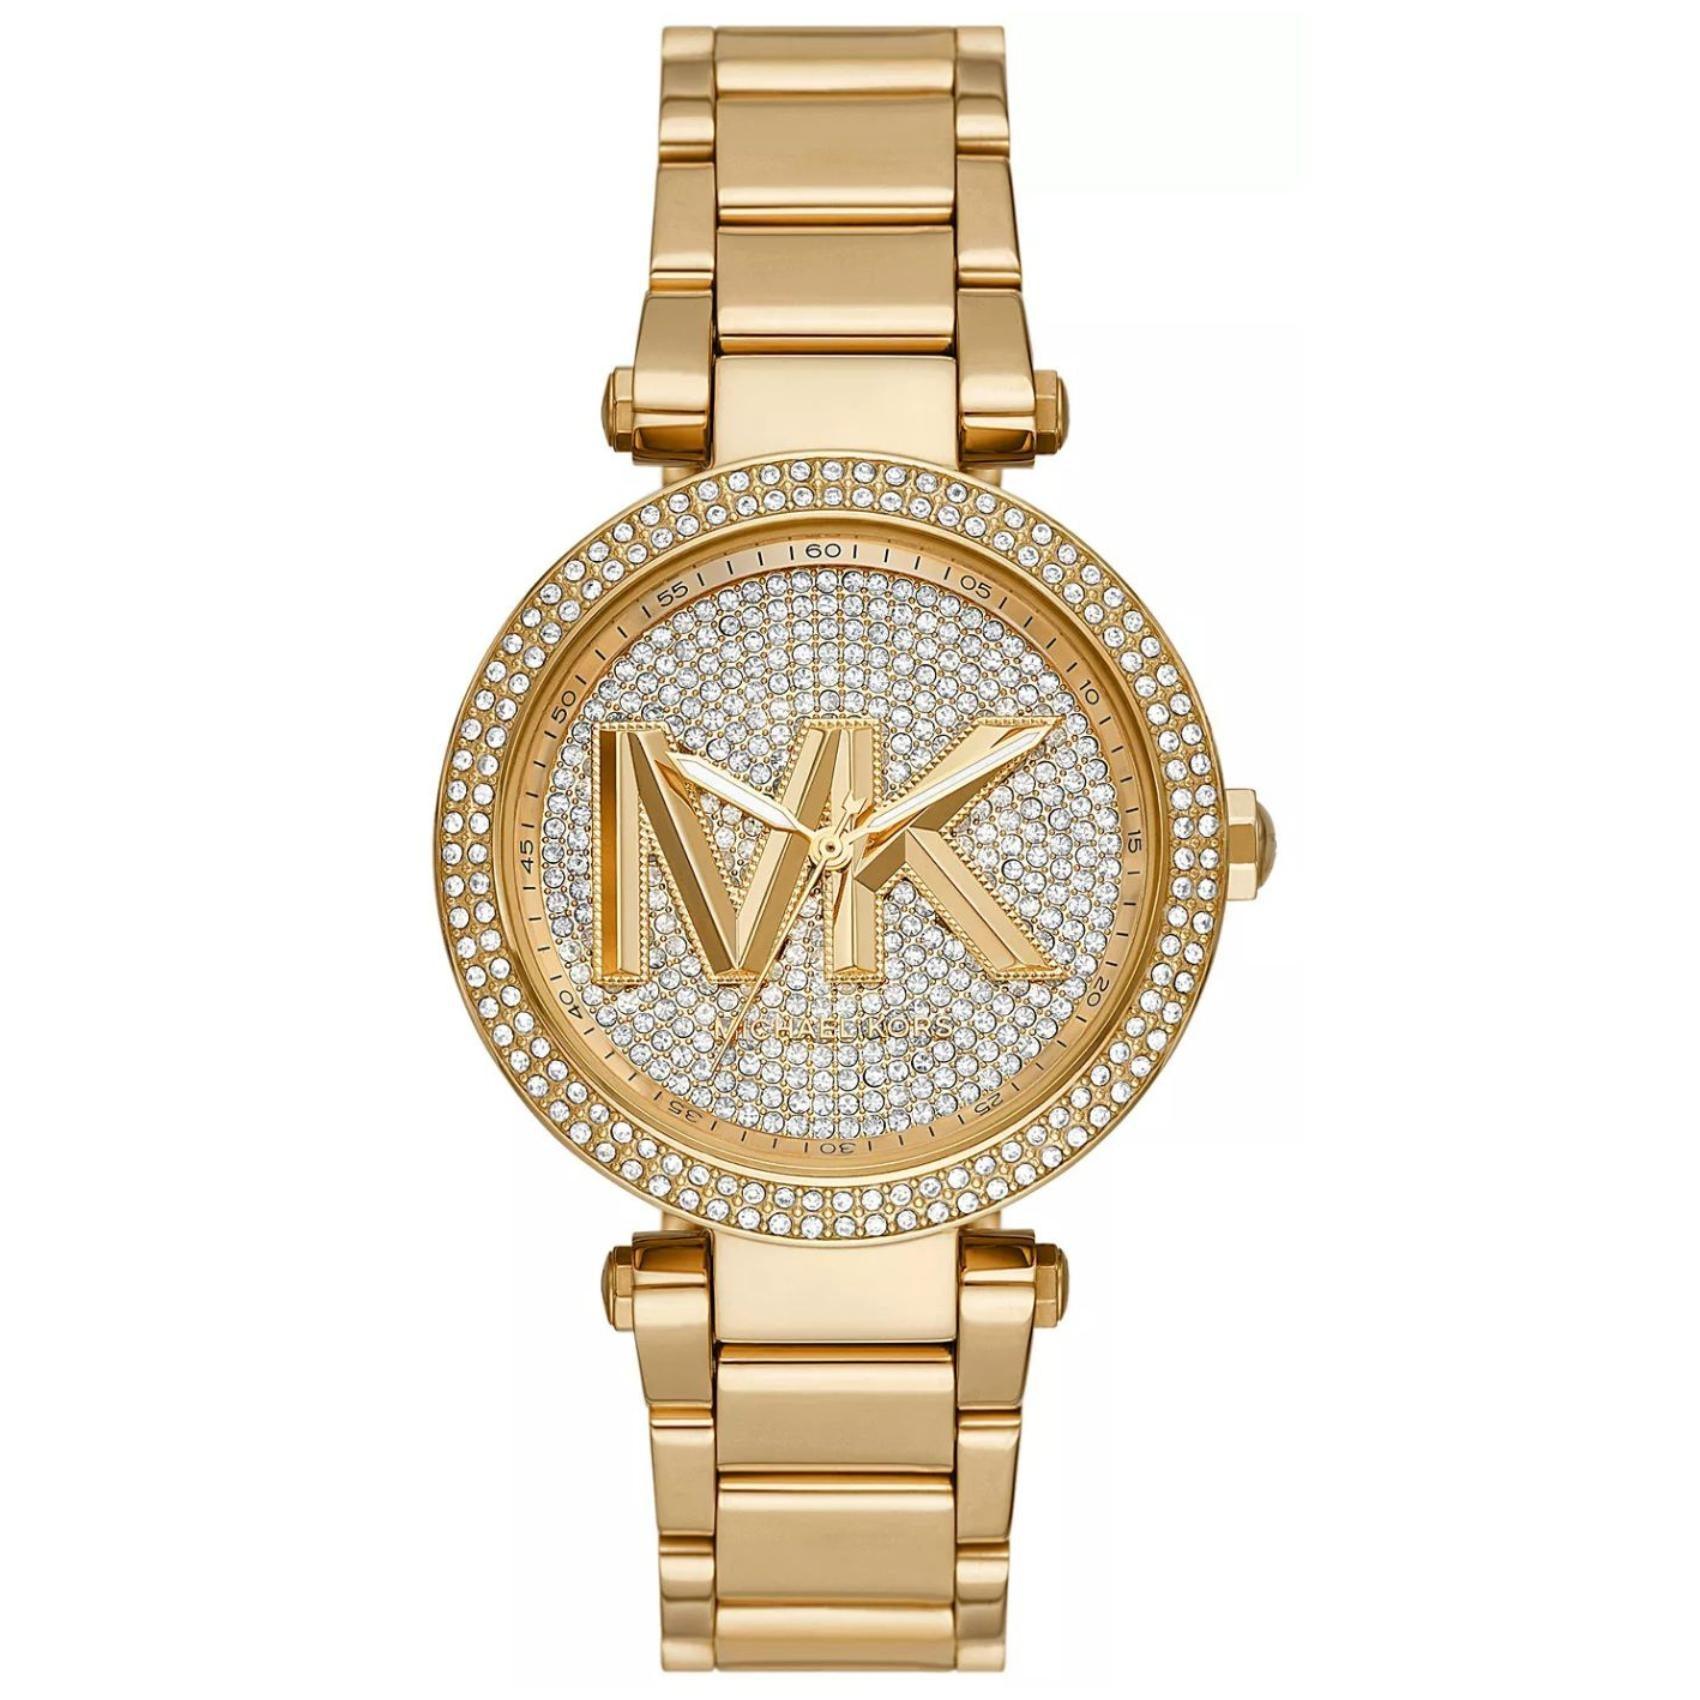 Γυναικείο ρολόι Michael Kors Parker MK7283 με ατσάλινο μπρασελέ σε χρυσό χρώμα, στρογγυλό χρυσό καντράν και στεφάνι 39mm με ζιργκόν.